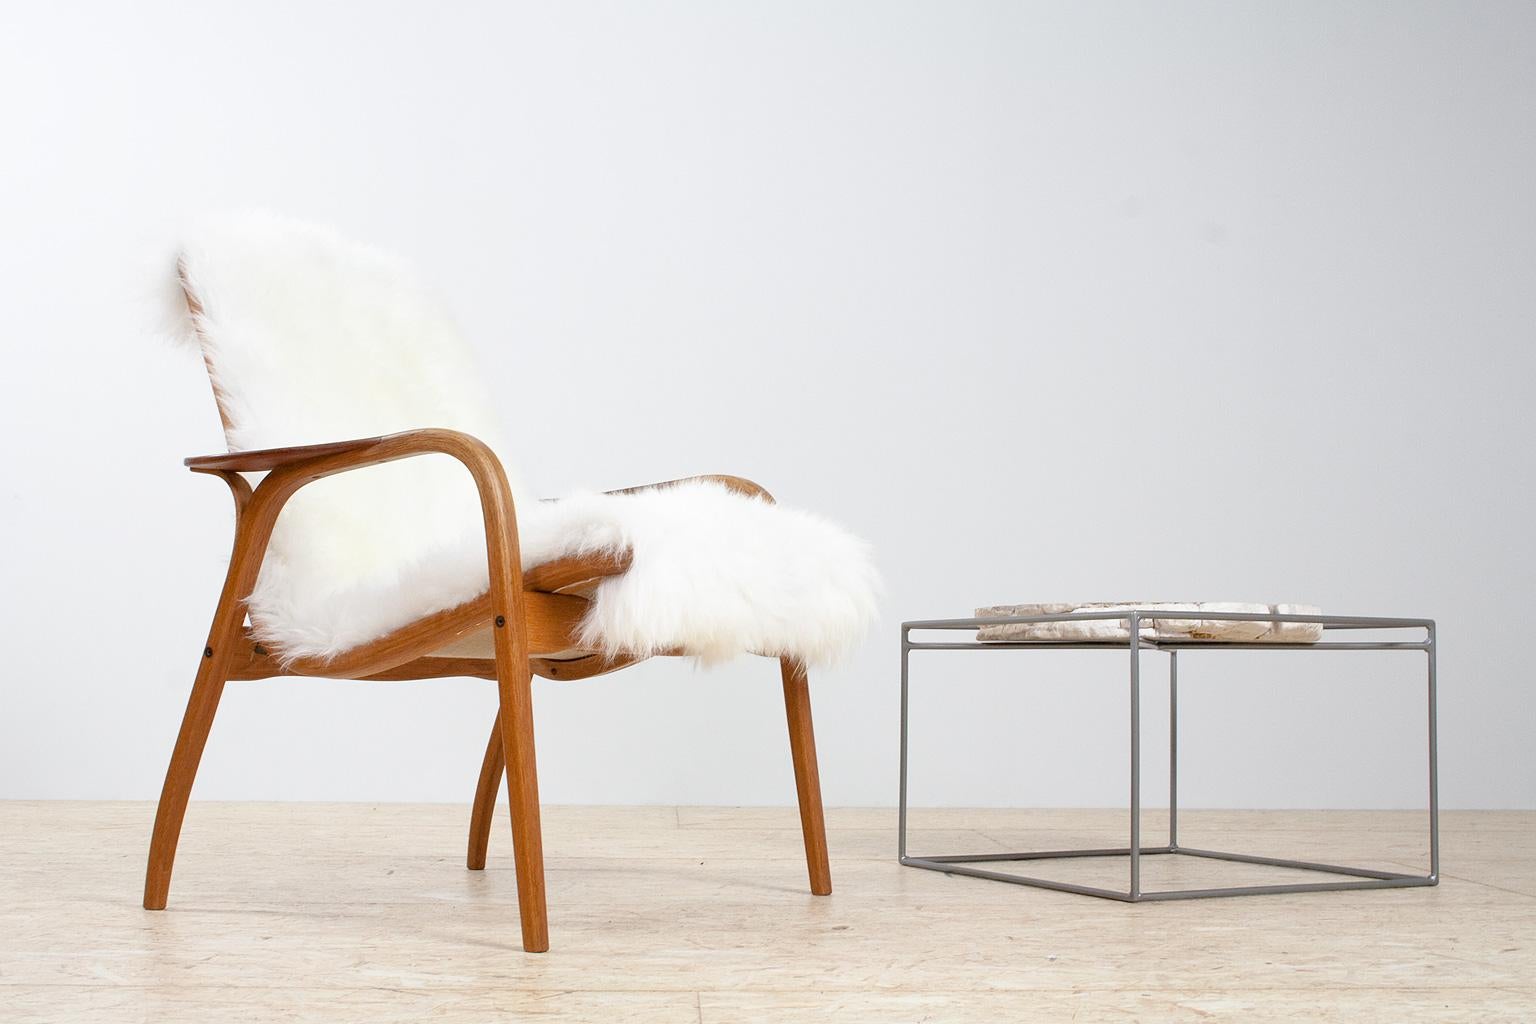 Mid-20th Century Scandinavian Modern Lounge Chair by Yngve Ekström in Oak & Sheepskin, 1951